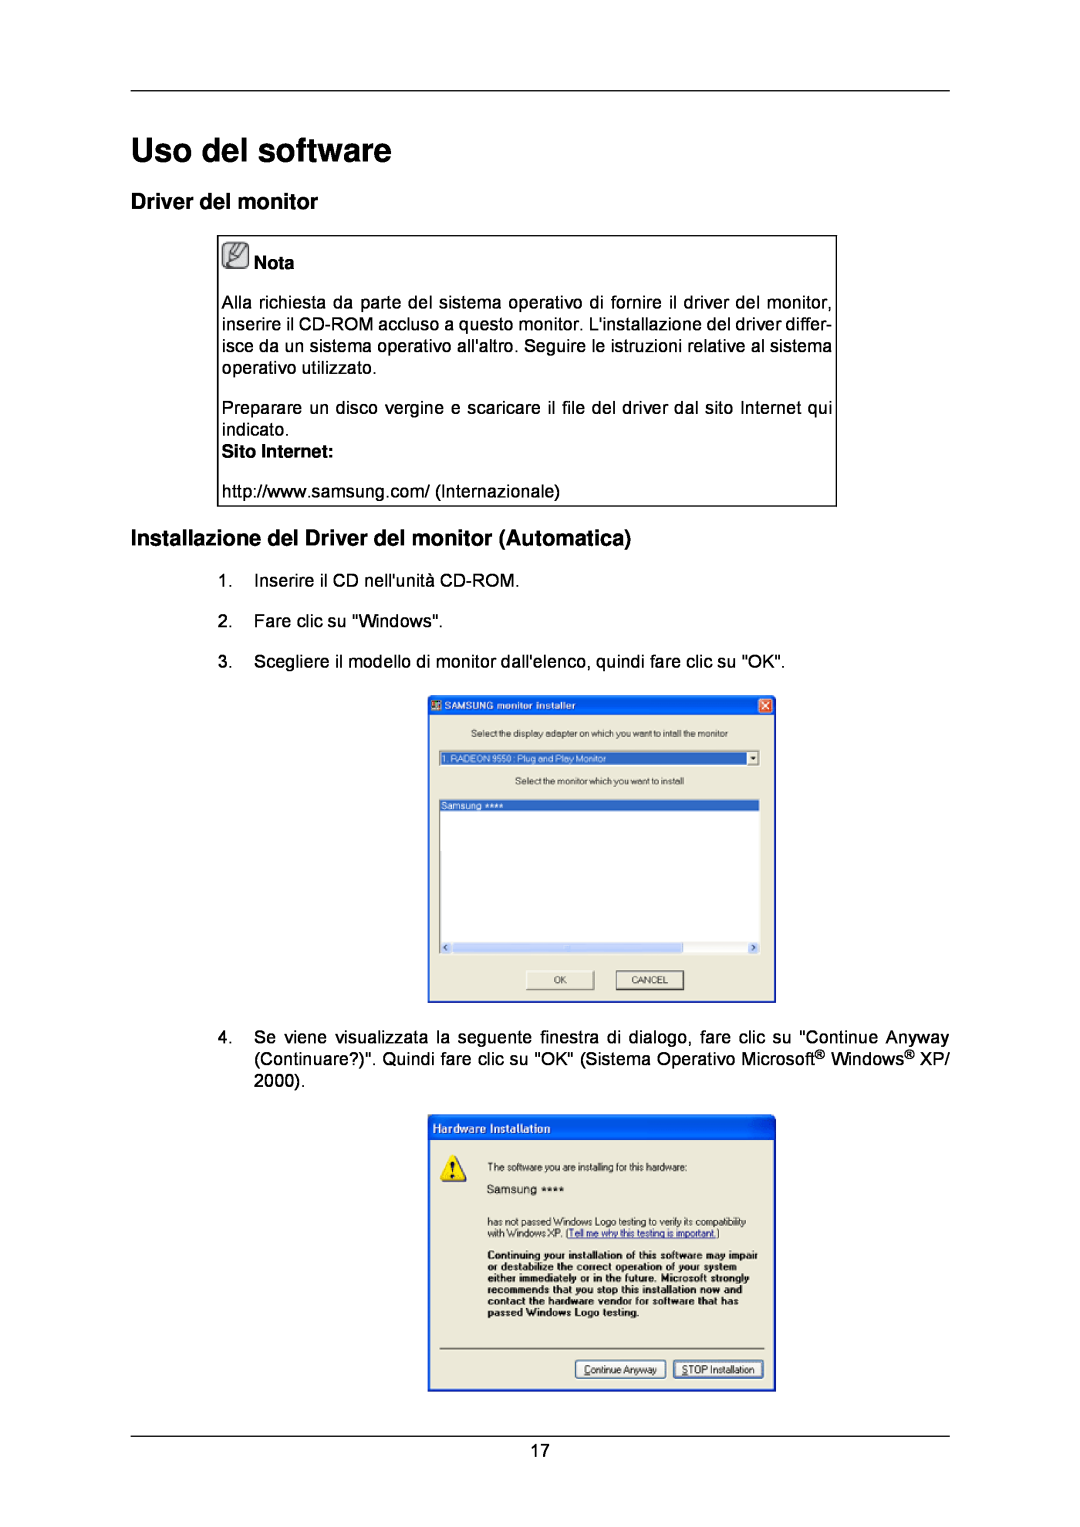 Samsung LS24CMKKFV/EN manual Uso del software, Installazione del Driver del monitor Automatica 